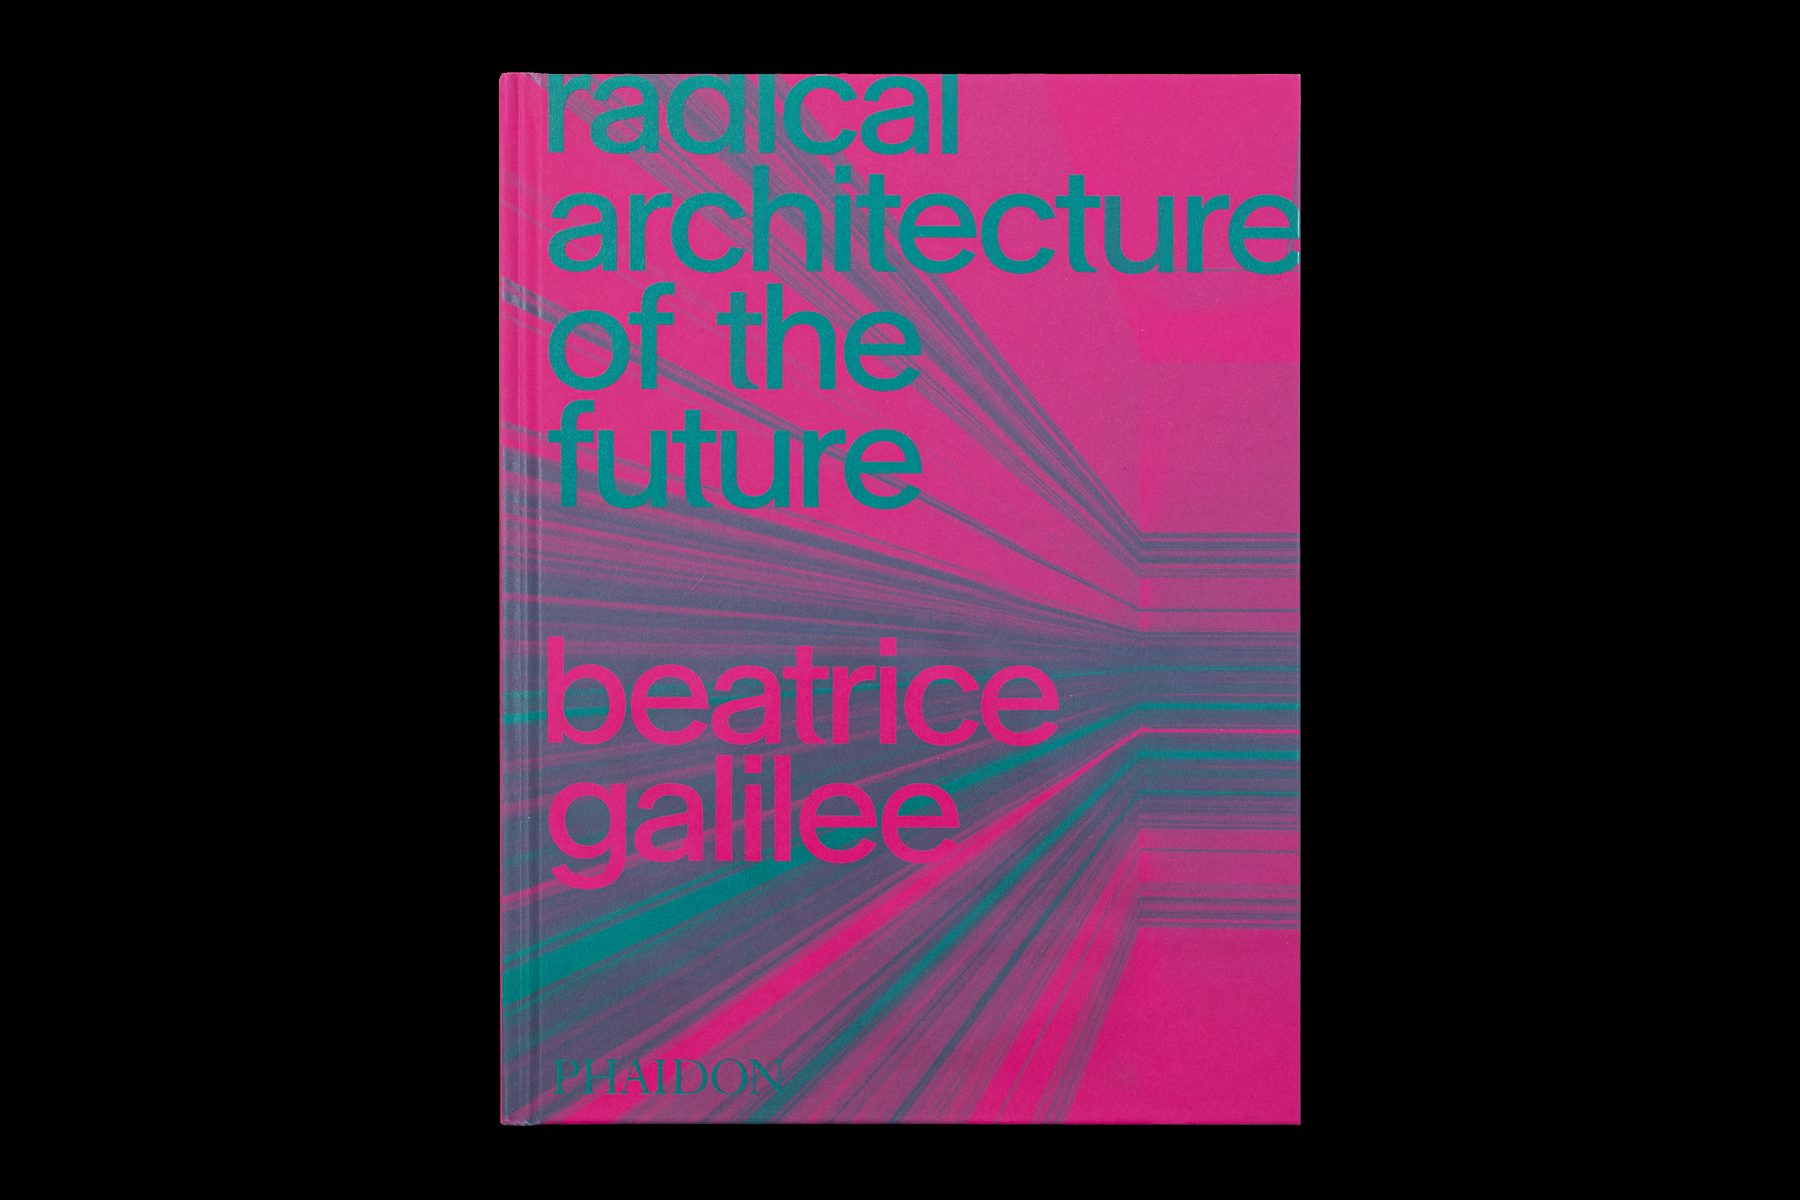 Radical-Architecture-of-the-Future_2020_Dimitri-Jeannottat_1800x1200_1c